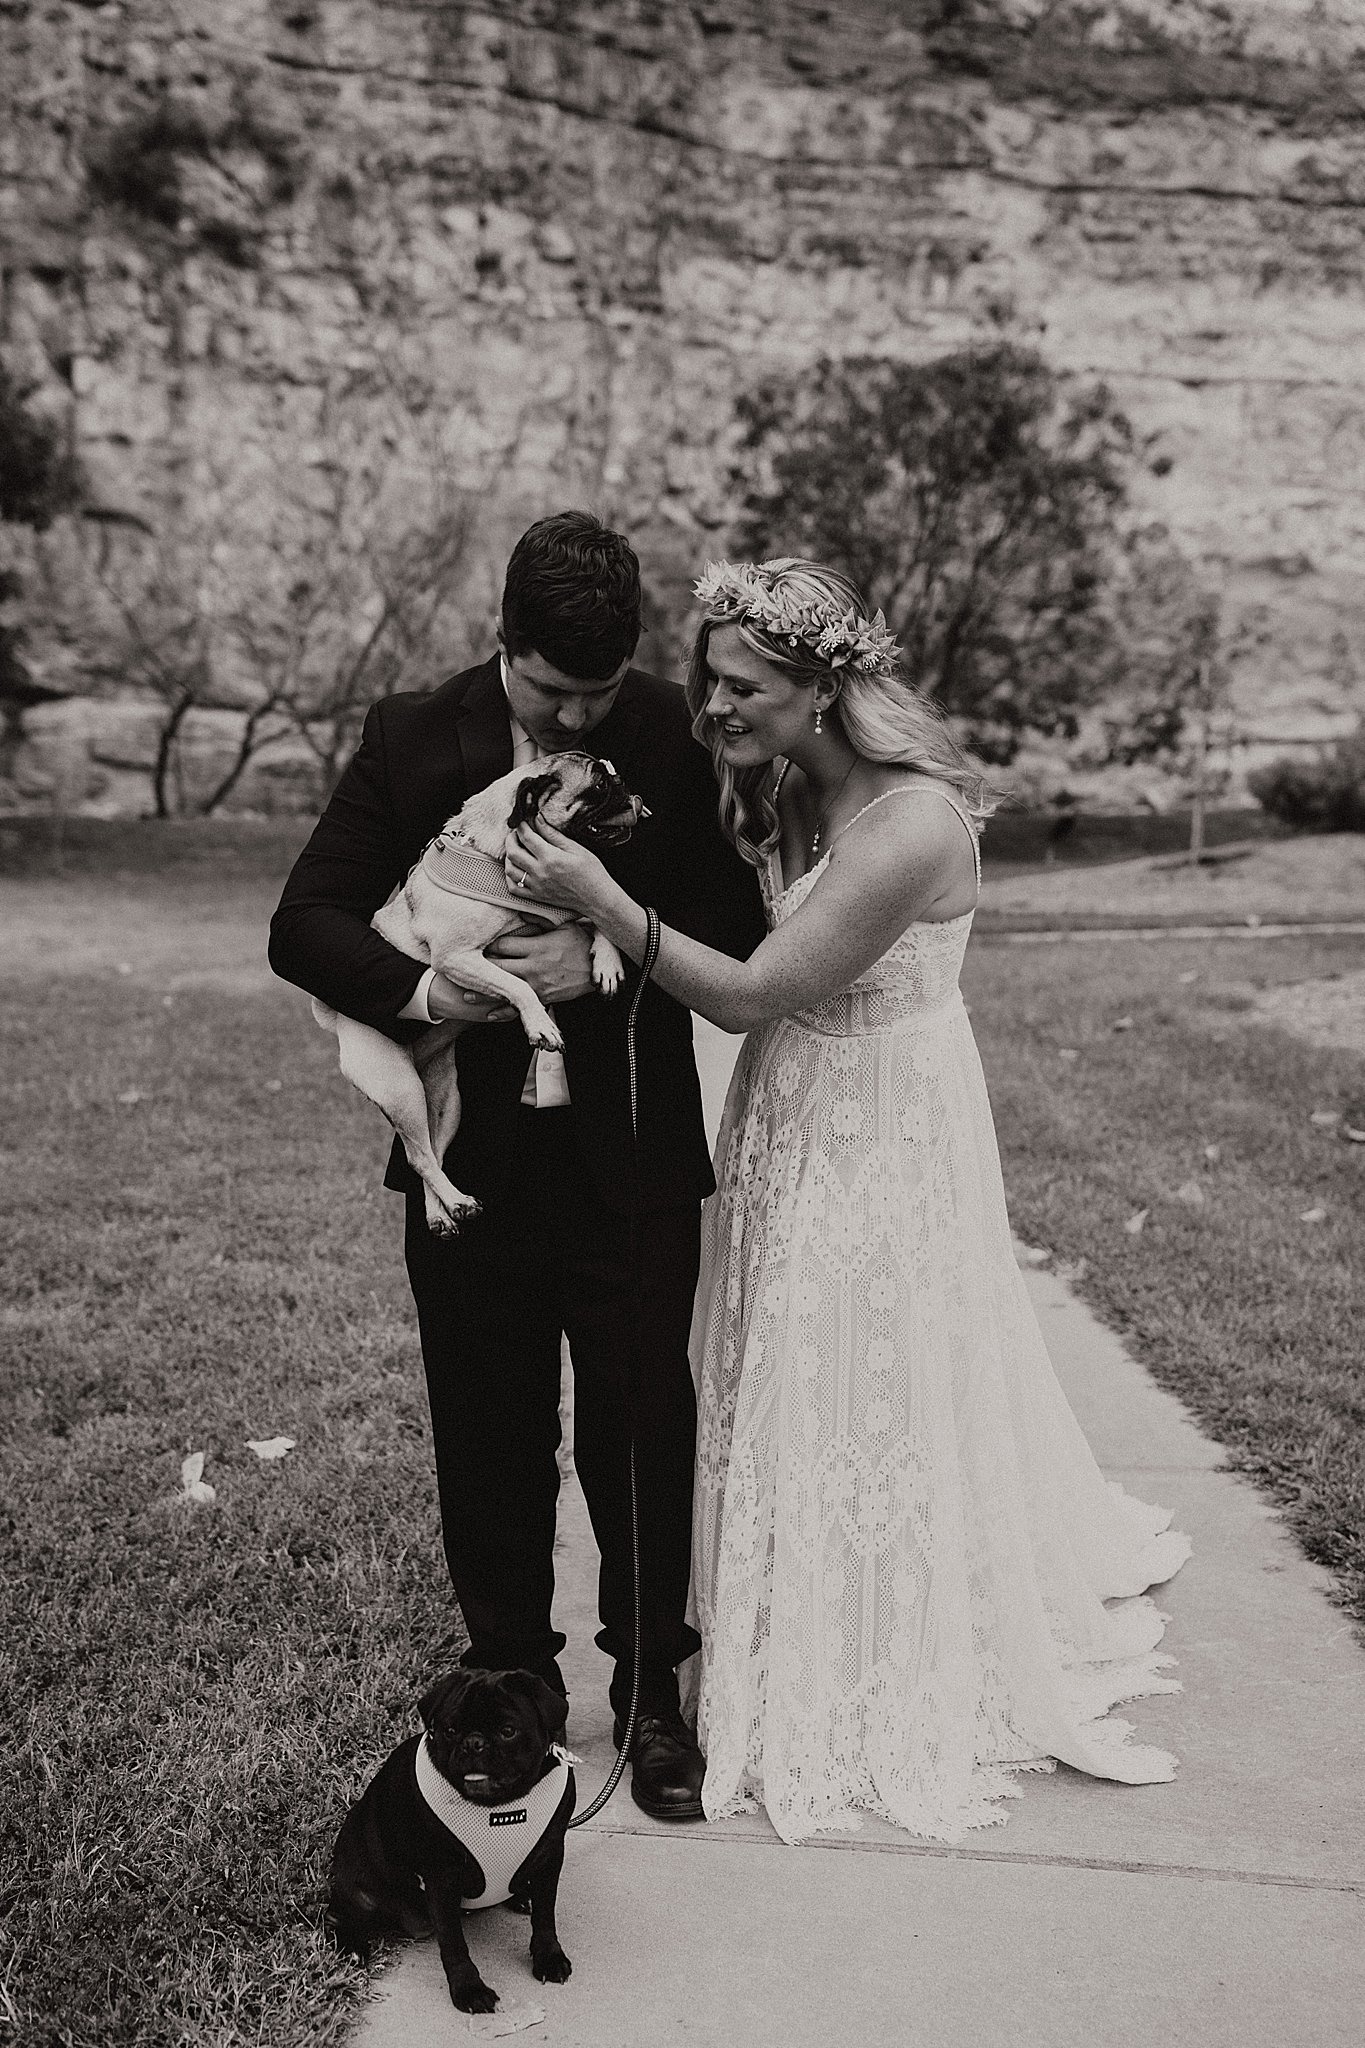 Dogs in Wedding Photos | Alton, IL Wedding Photos